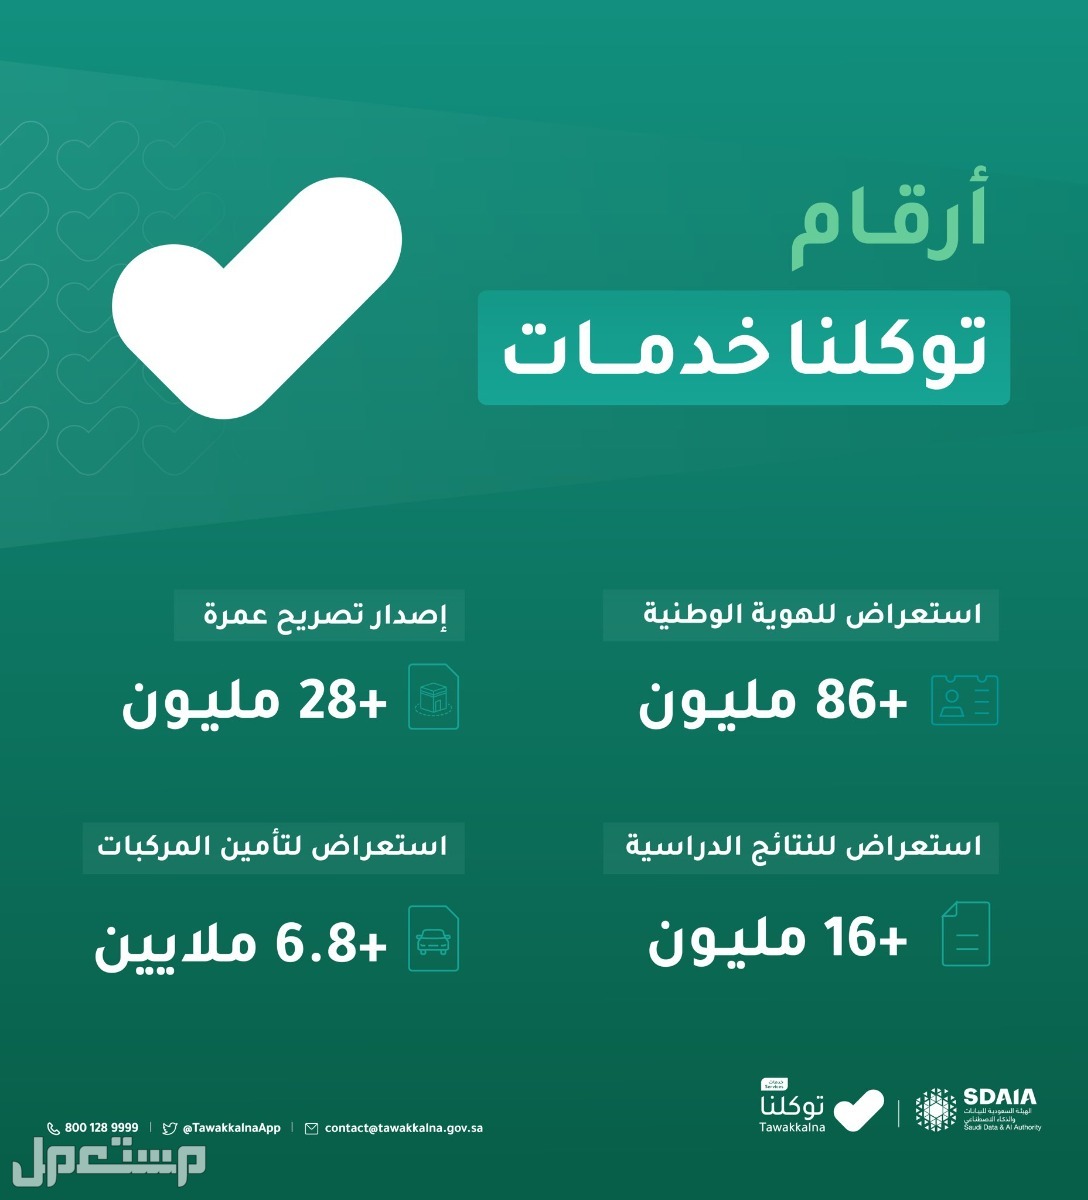 خطوات استعراض إعدادات الحساب في توكلنا خدمات في عمان أرقام توكلنا